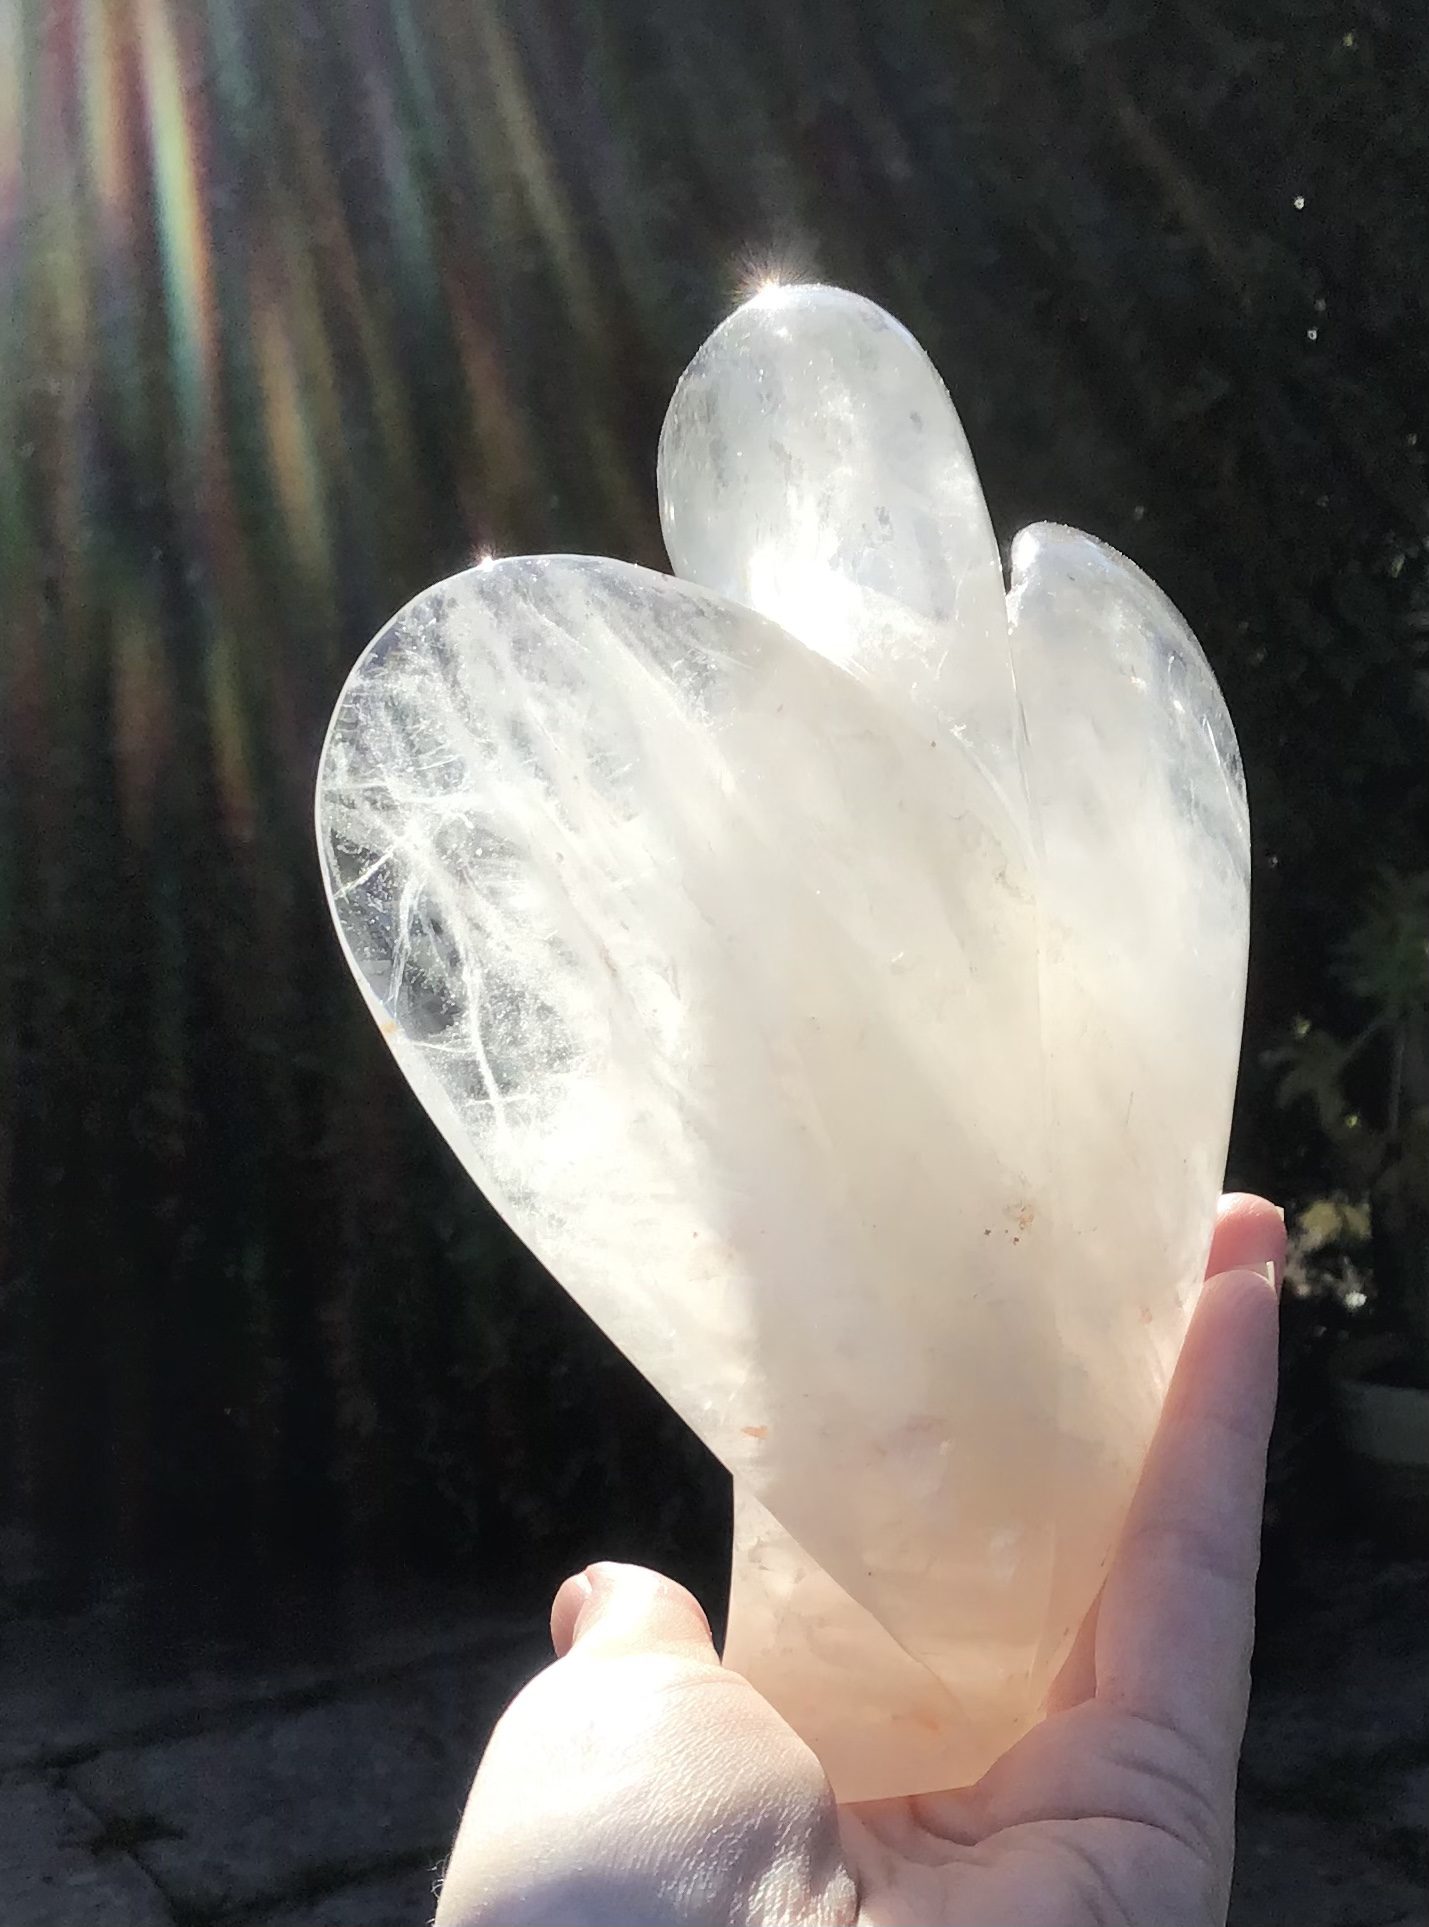 Clear Quartz Crystal Angel